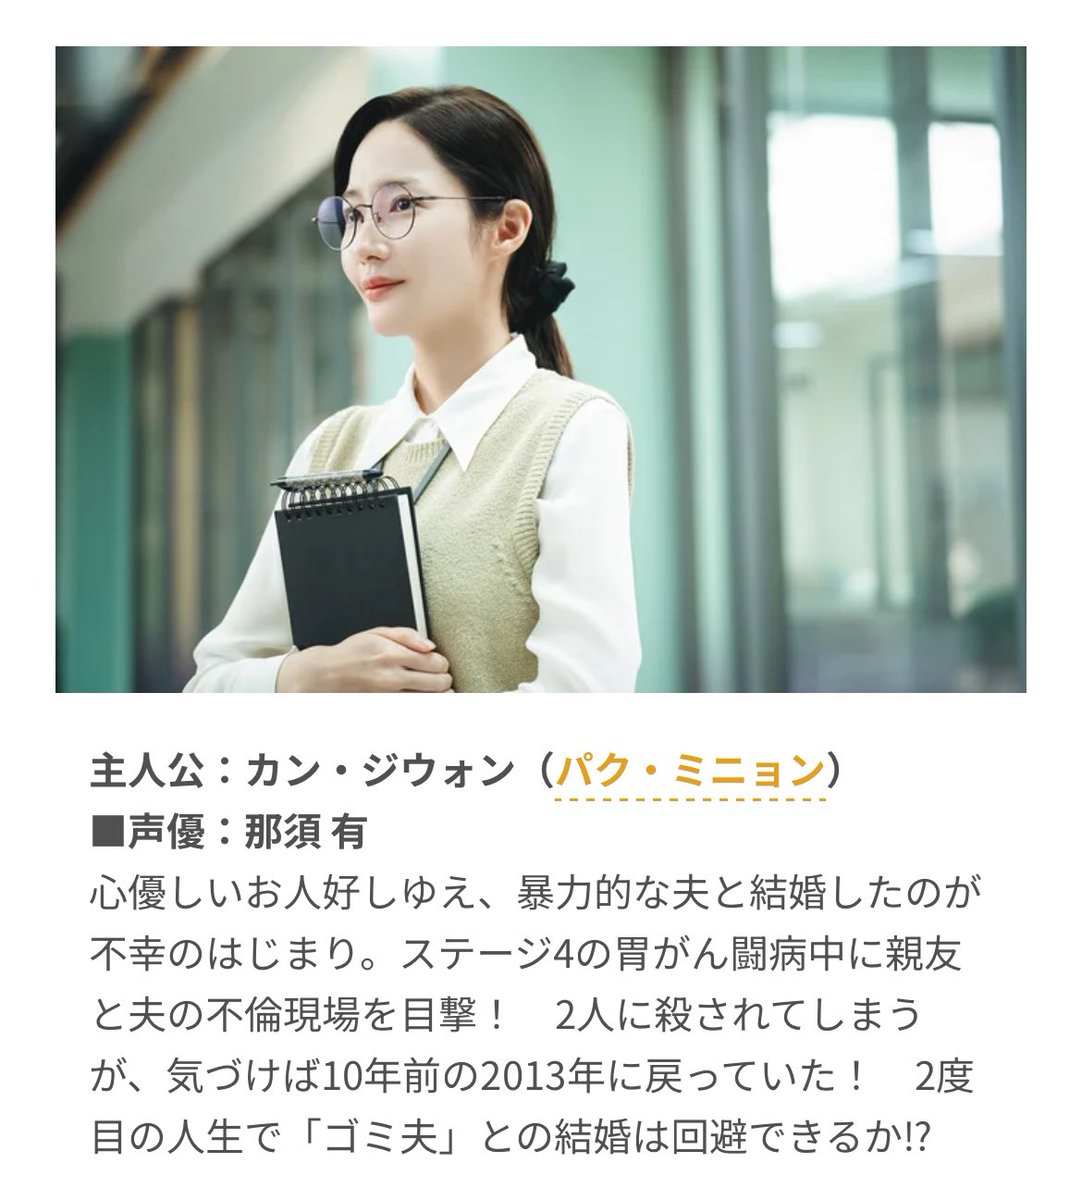 世界で大ヒット『私の夫と結婚して』日本語吹替版5月3日配信！「私の夫と結婚して！」「地面になりたい…」名セリフが日本語でどう飛び出す!? 
#パクミニョン #私の夫と結婚して
🔗 lettuceclub.net/news/article/1…